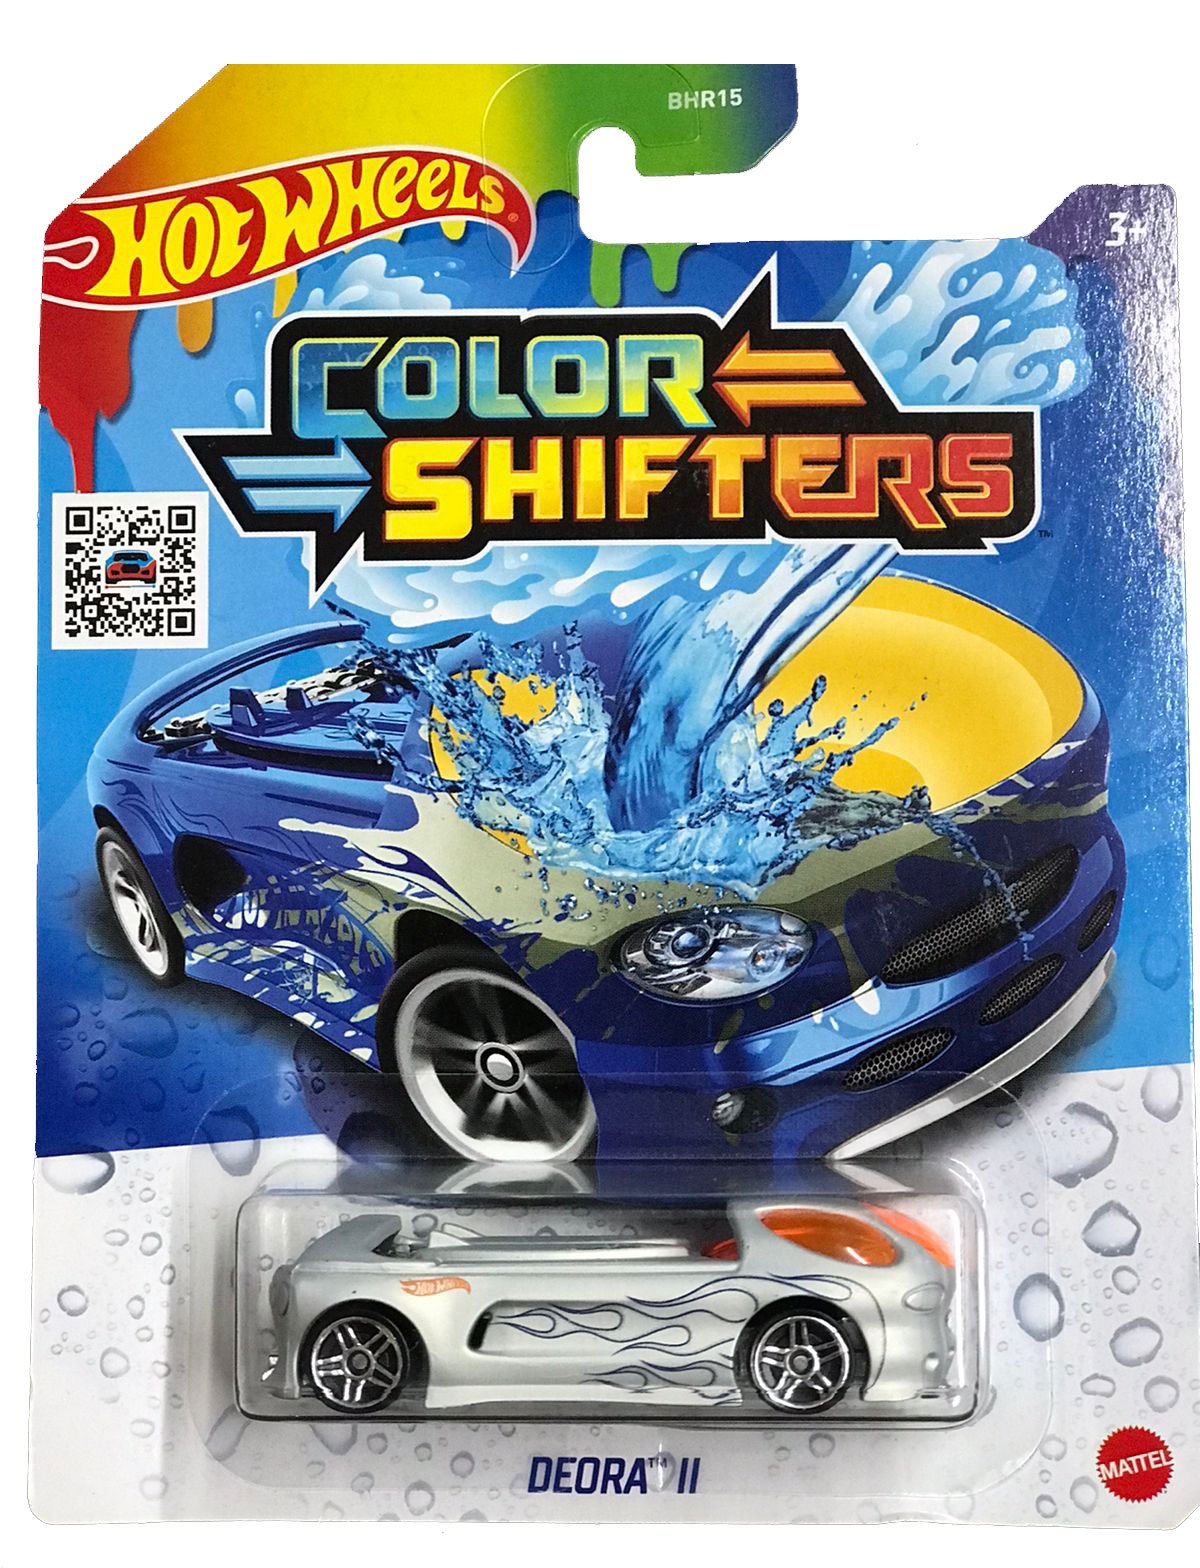 Hot Wheels Muda De Color Shifters Carrinho Mattel 1:64